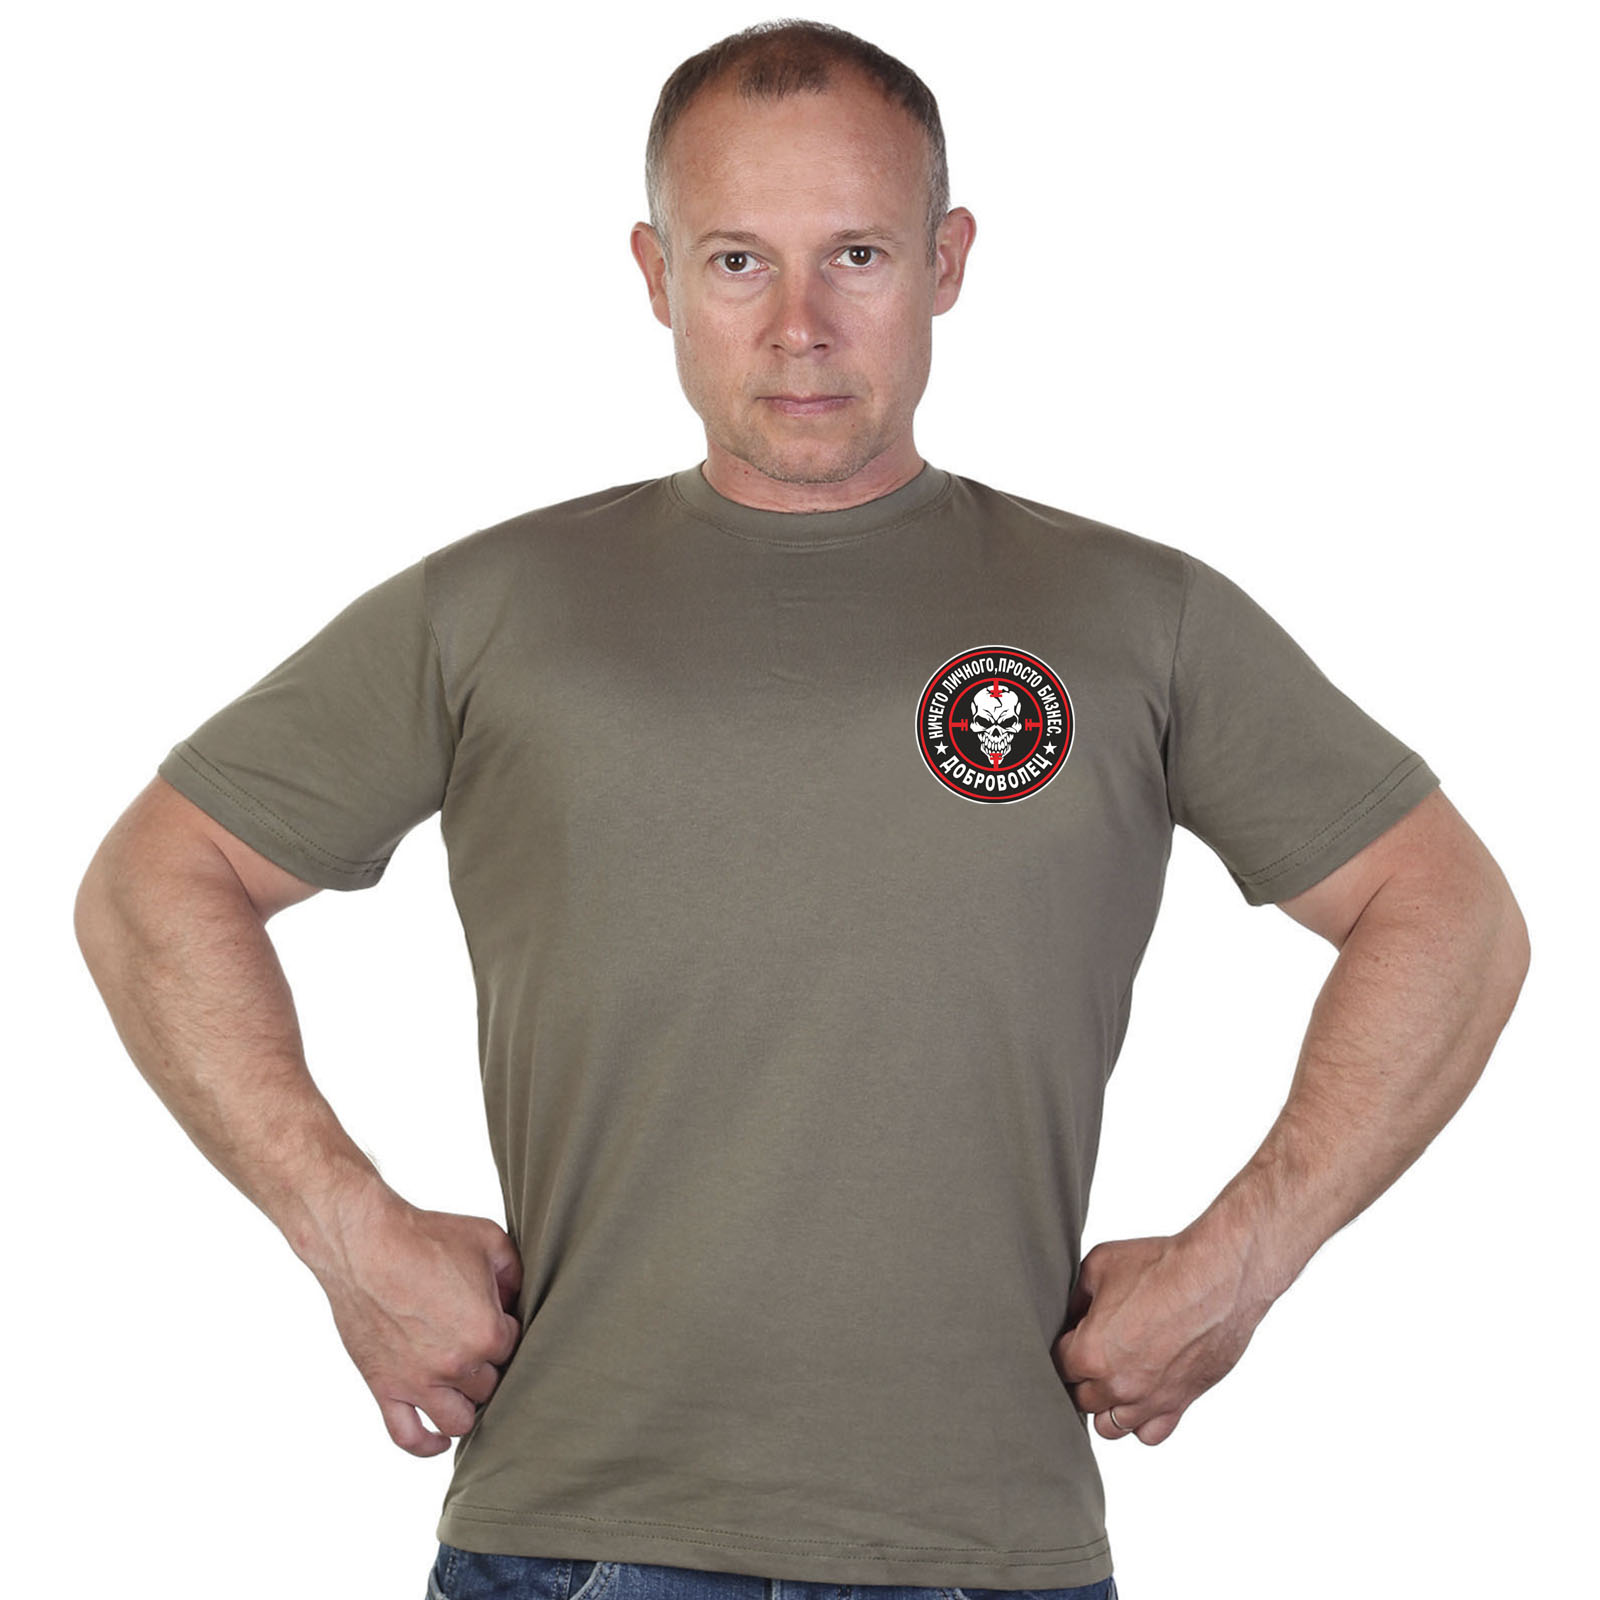 Купить мужскую оливковую футболку с термоаппликацией Доброволец с доставкой